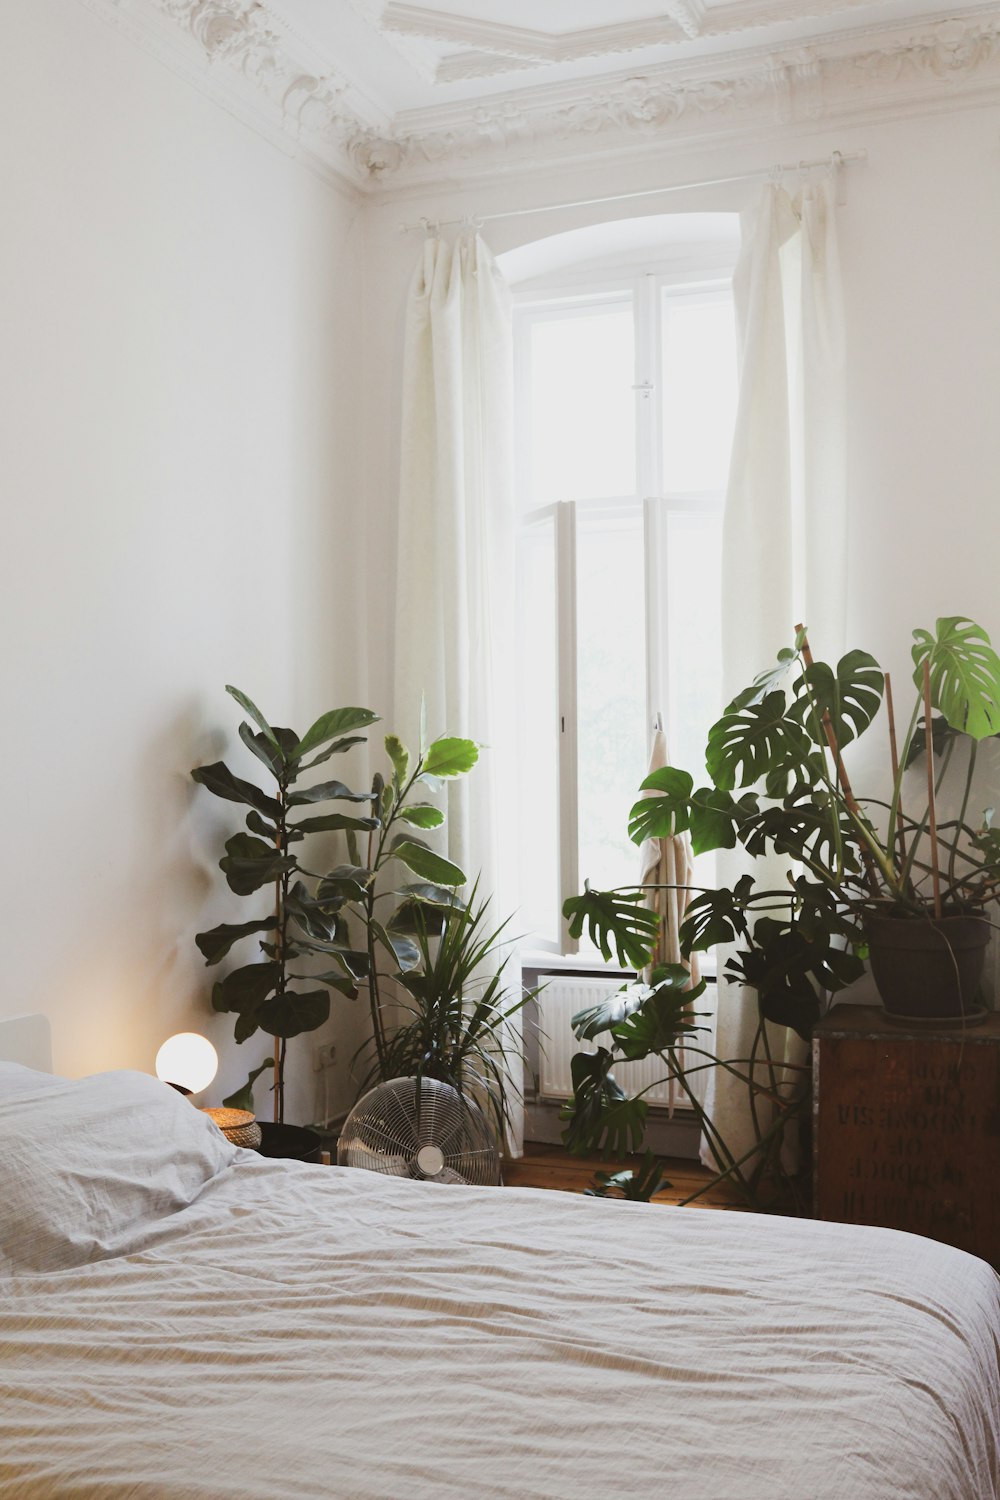 Grüne Topfpflanze in der Nähe des Bettes